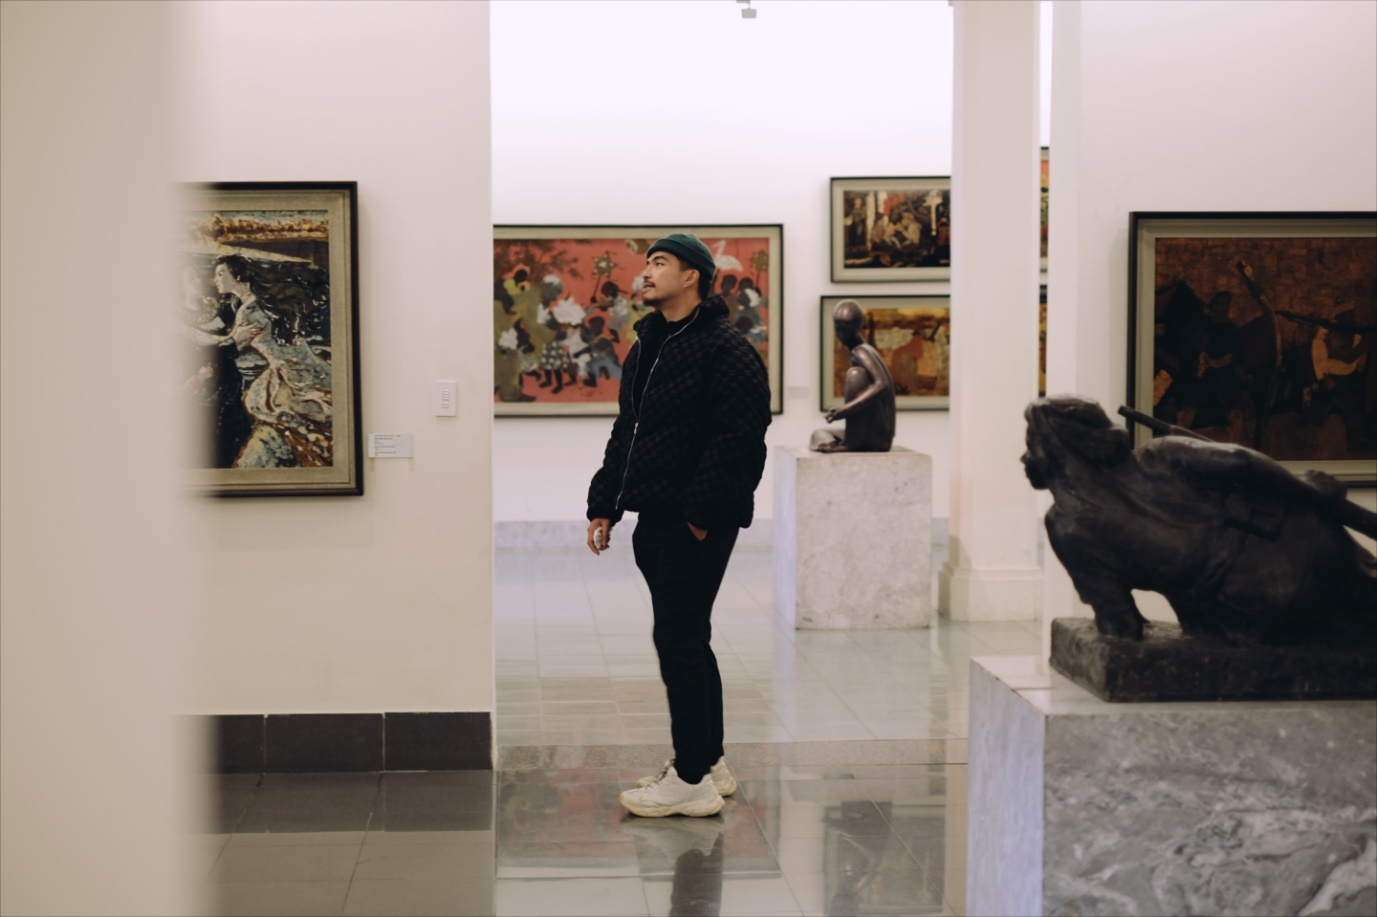 Sống ảo “cháy máy” tại 8 điểm văn hóa nghệ thuật đẹp ấn tượng ở Hà Nội - 2